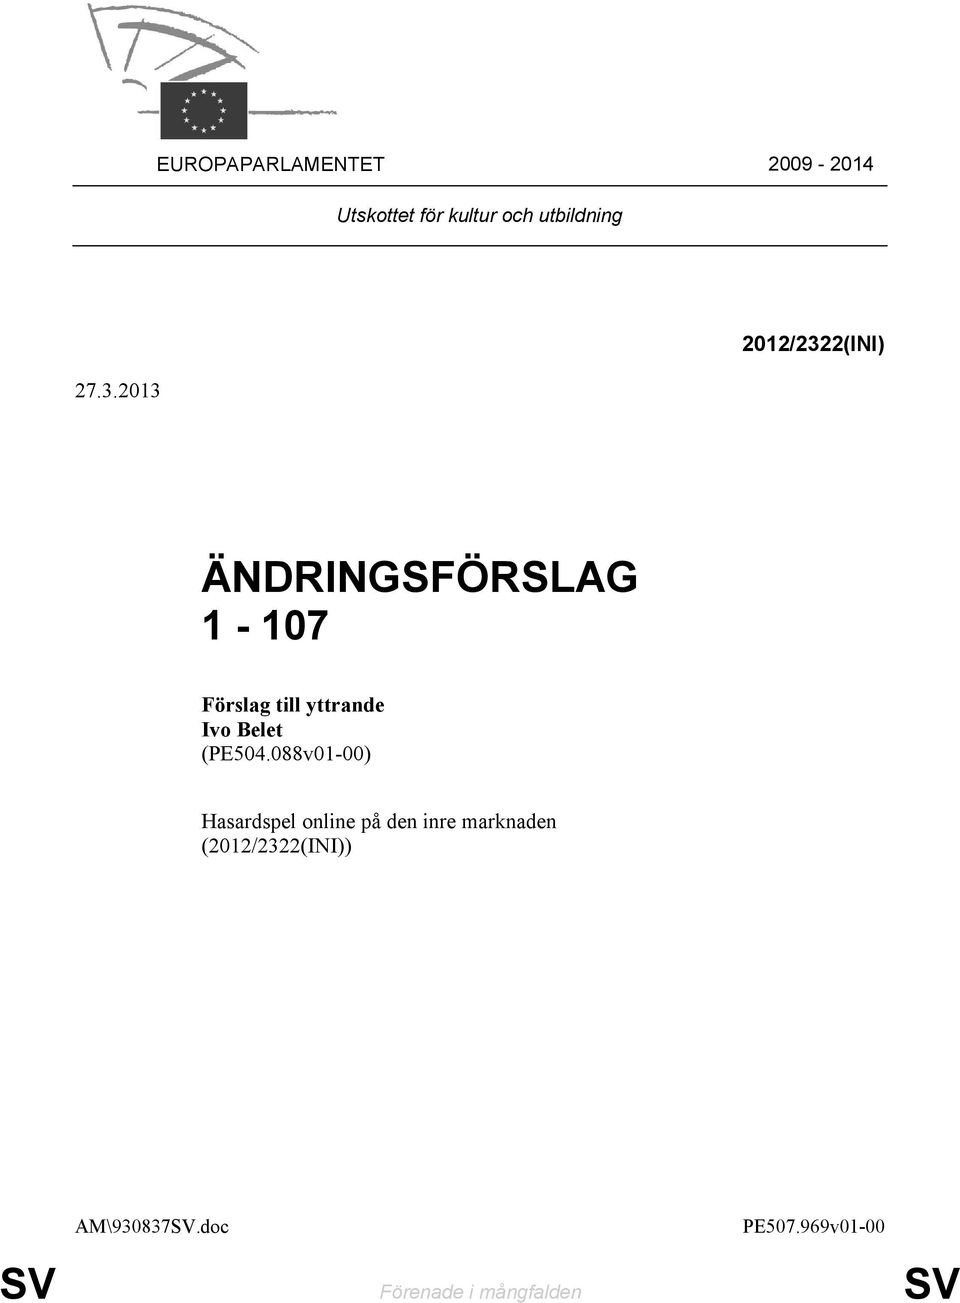 2013 2012/2322(INI) ÄNDRINGSFÖRSLAG 1-107 Ivo Belet (PE504.